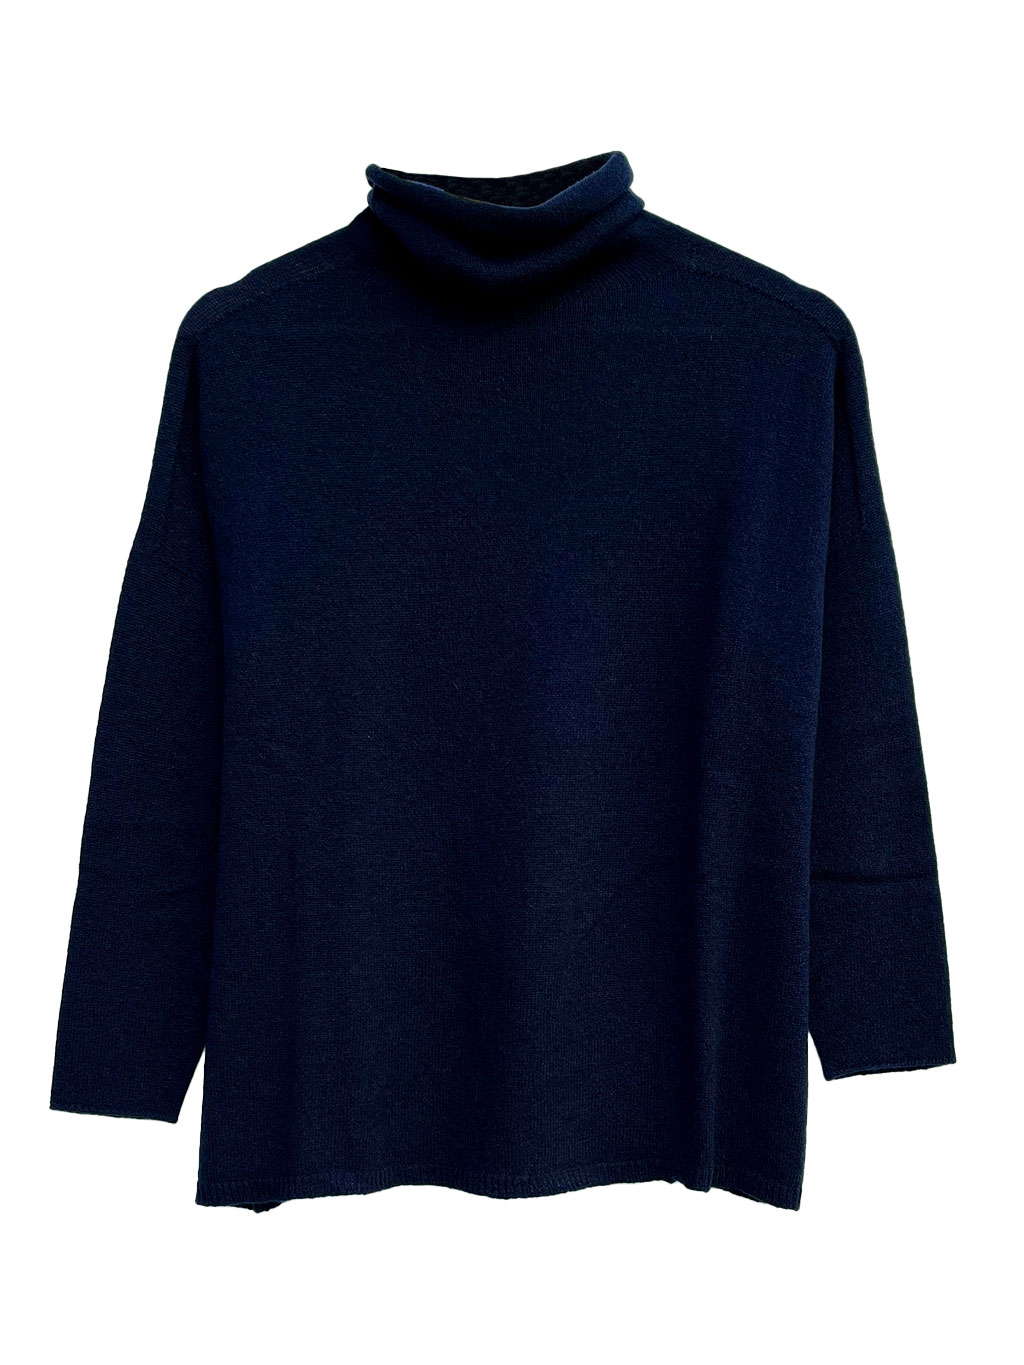 navy-blue-cashmere-turtleneck-pullover